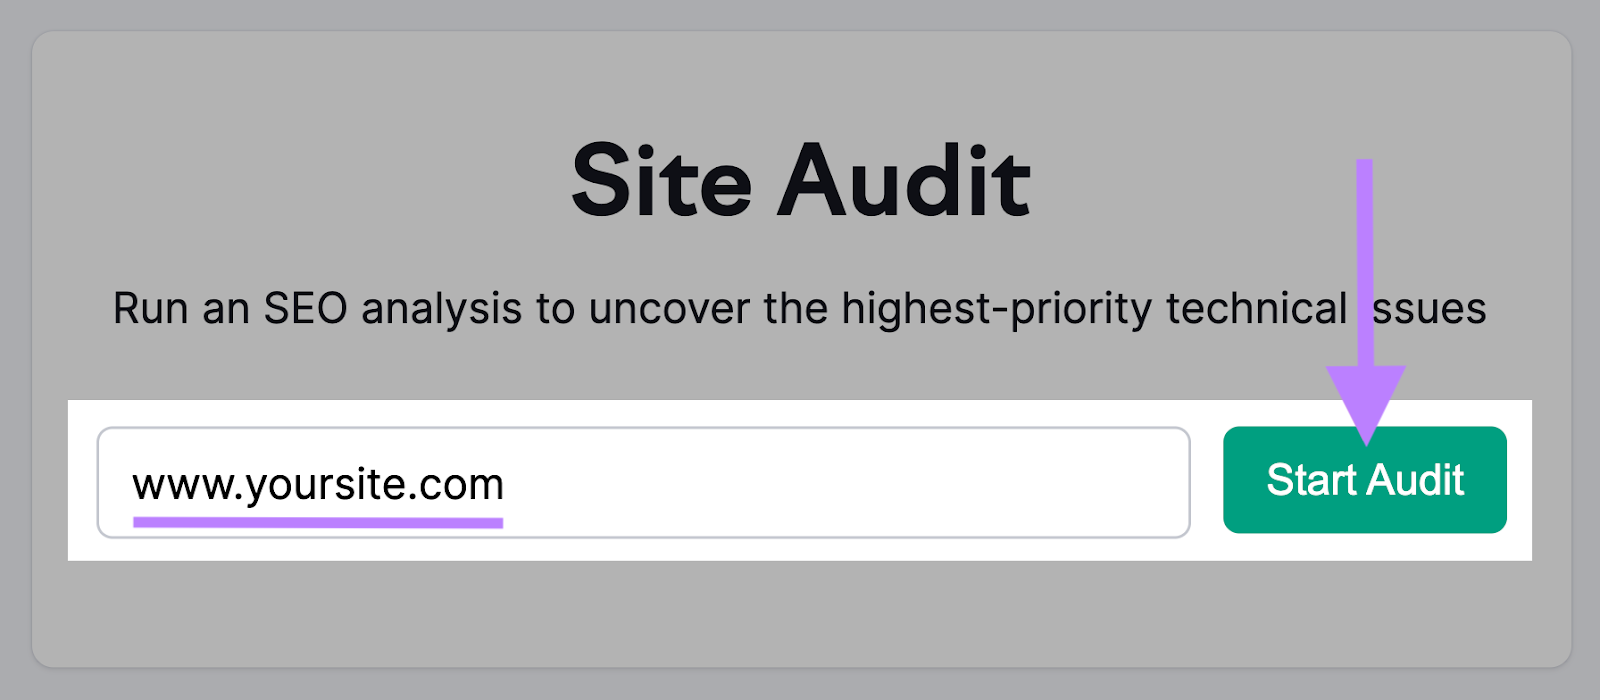 Semrush’s Site Audit tool search bar